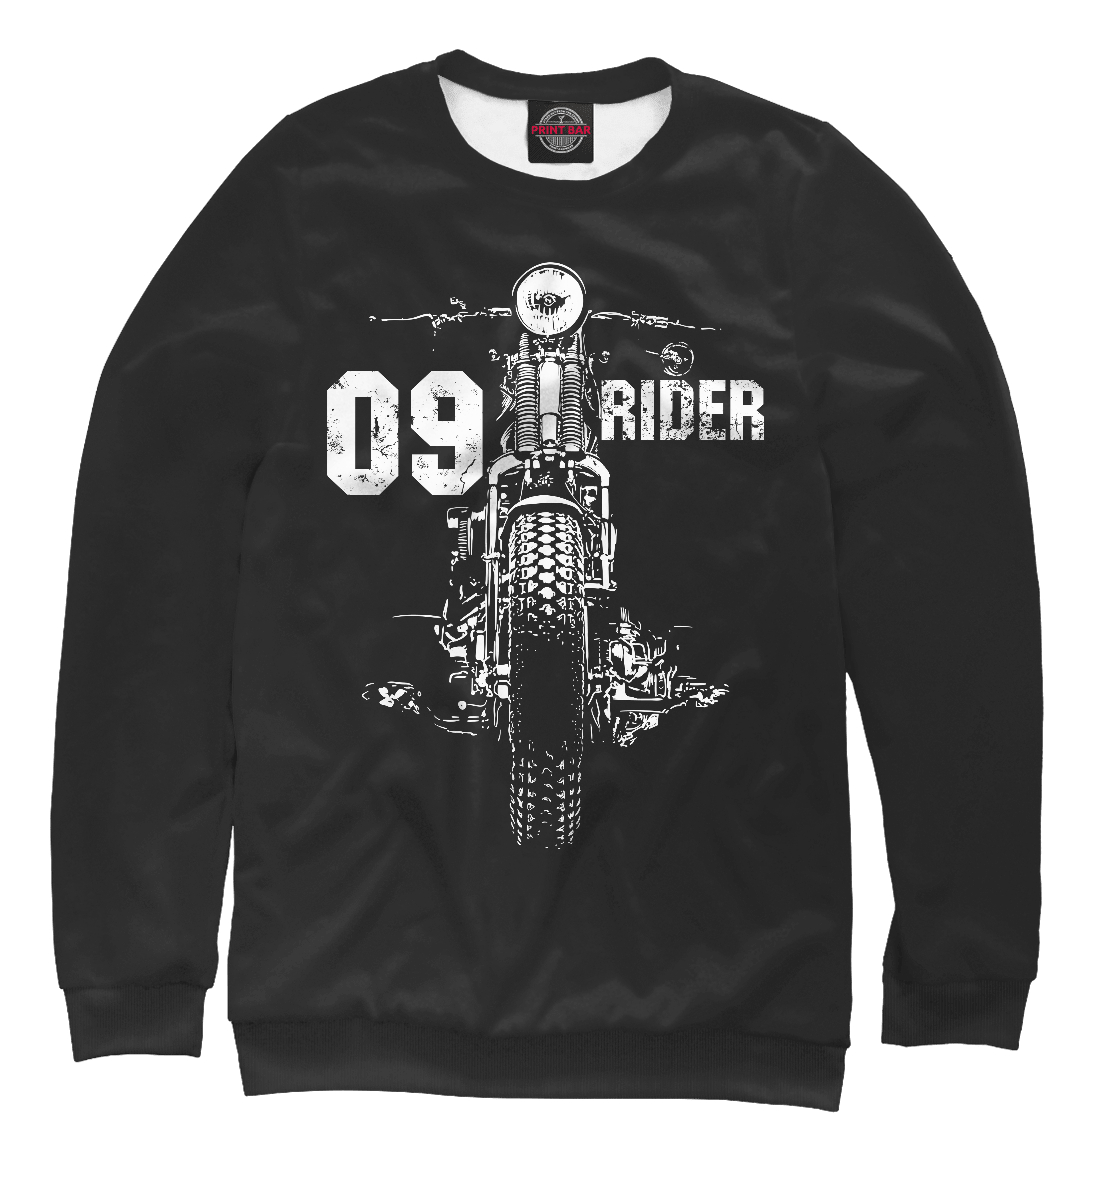 09 rider